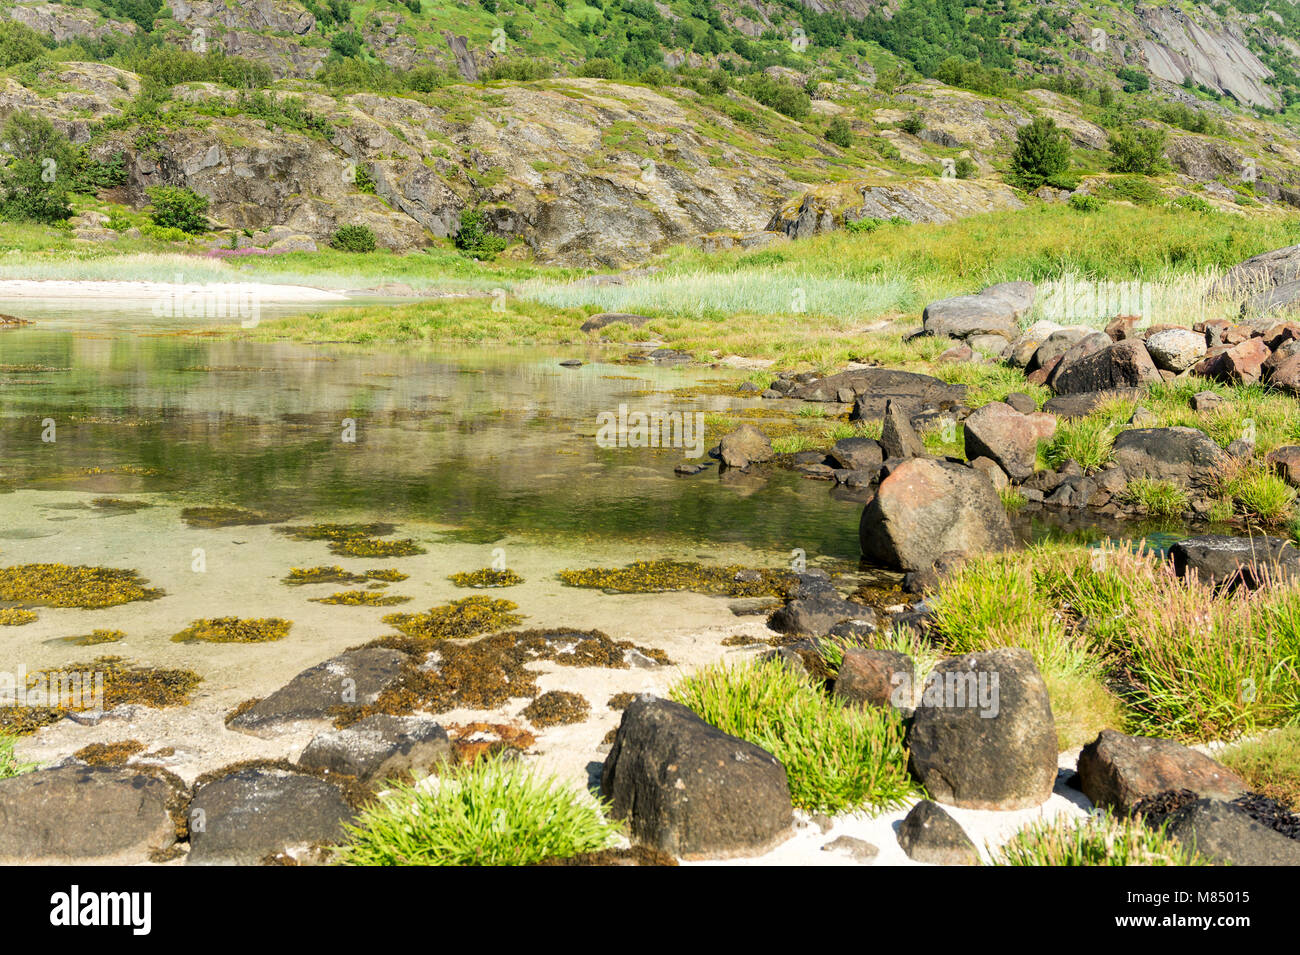 Le acque turchesi della baia, le pietre e la verde erba in estate, Arsteinen isola dell'arcipelago delle Lofoten, Norvegia Foto Stock